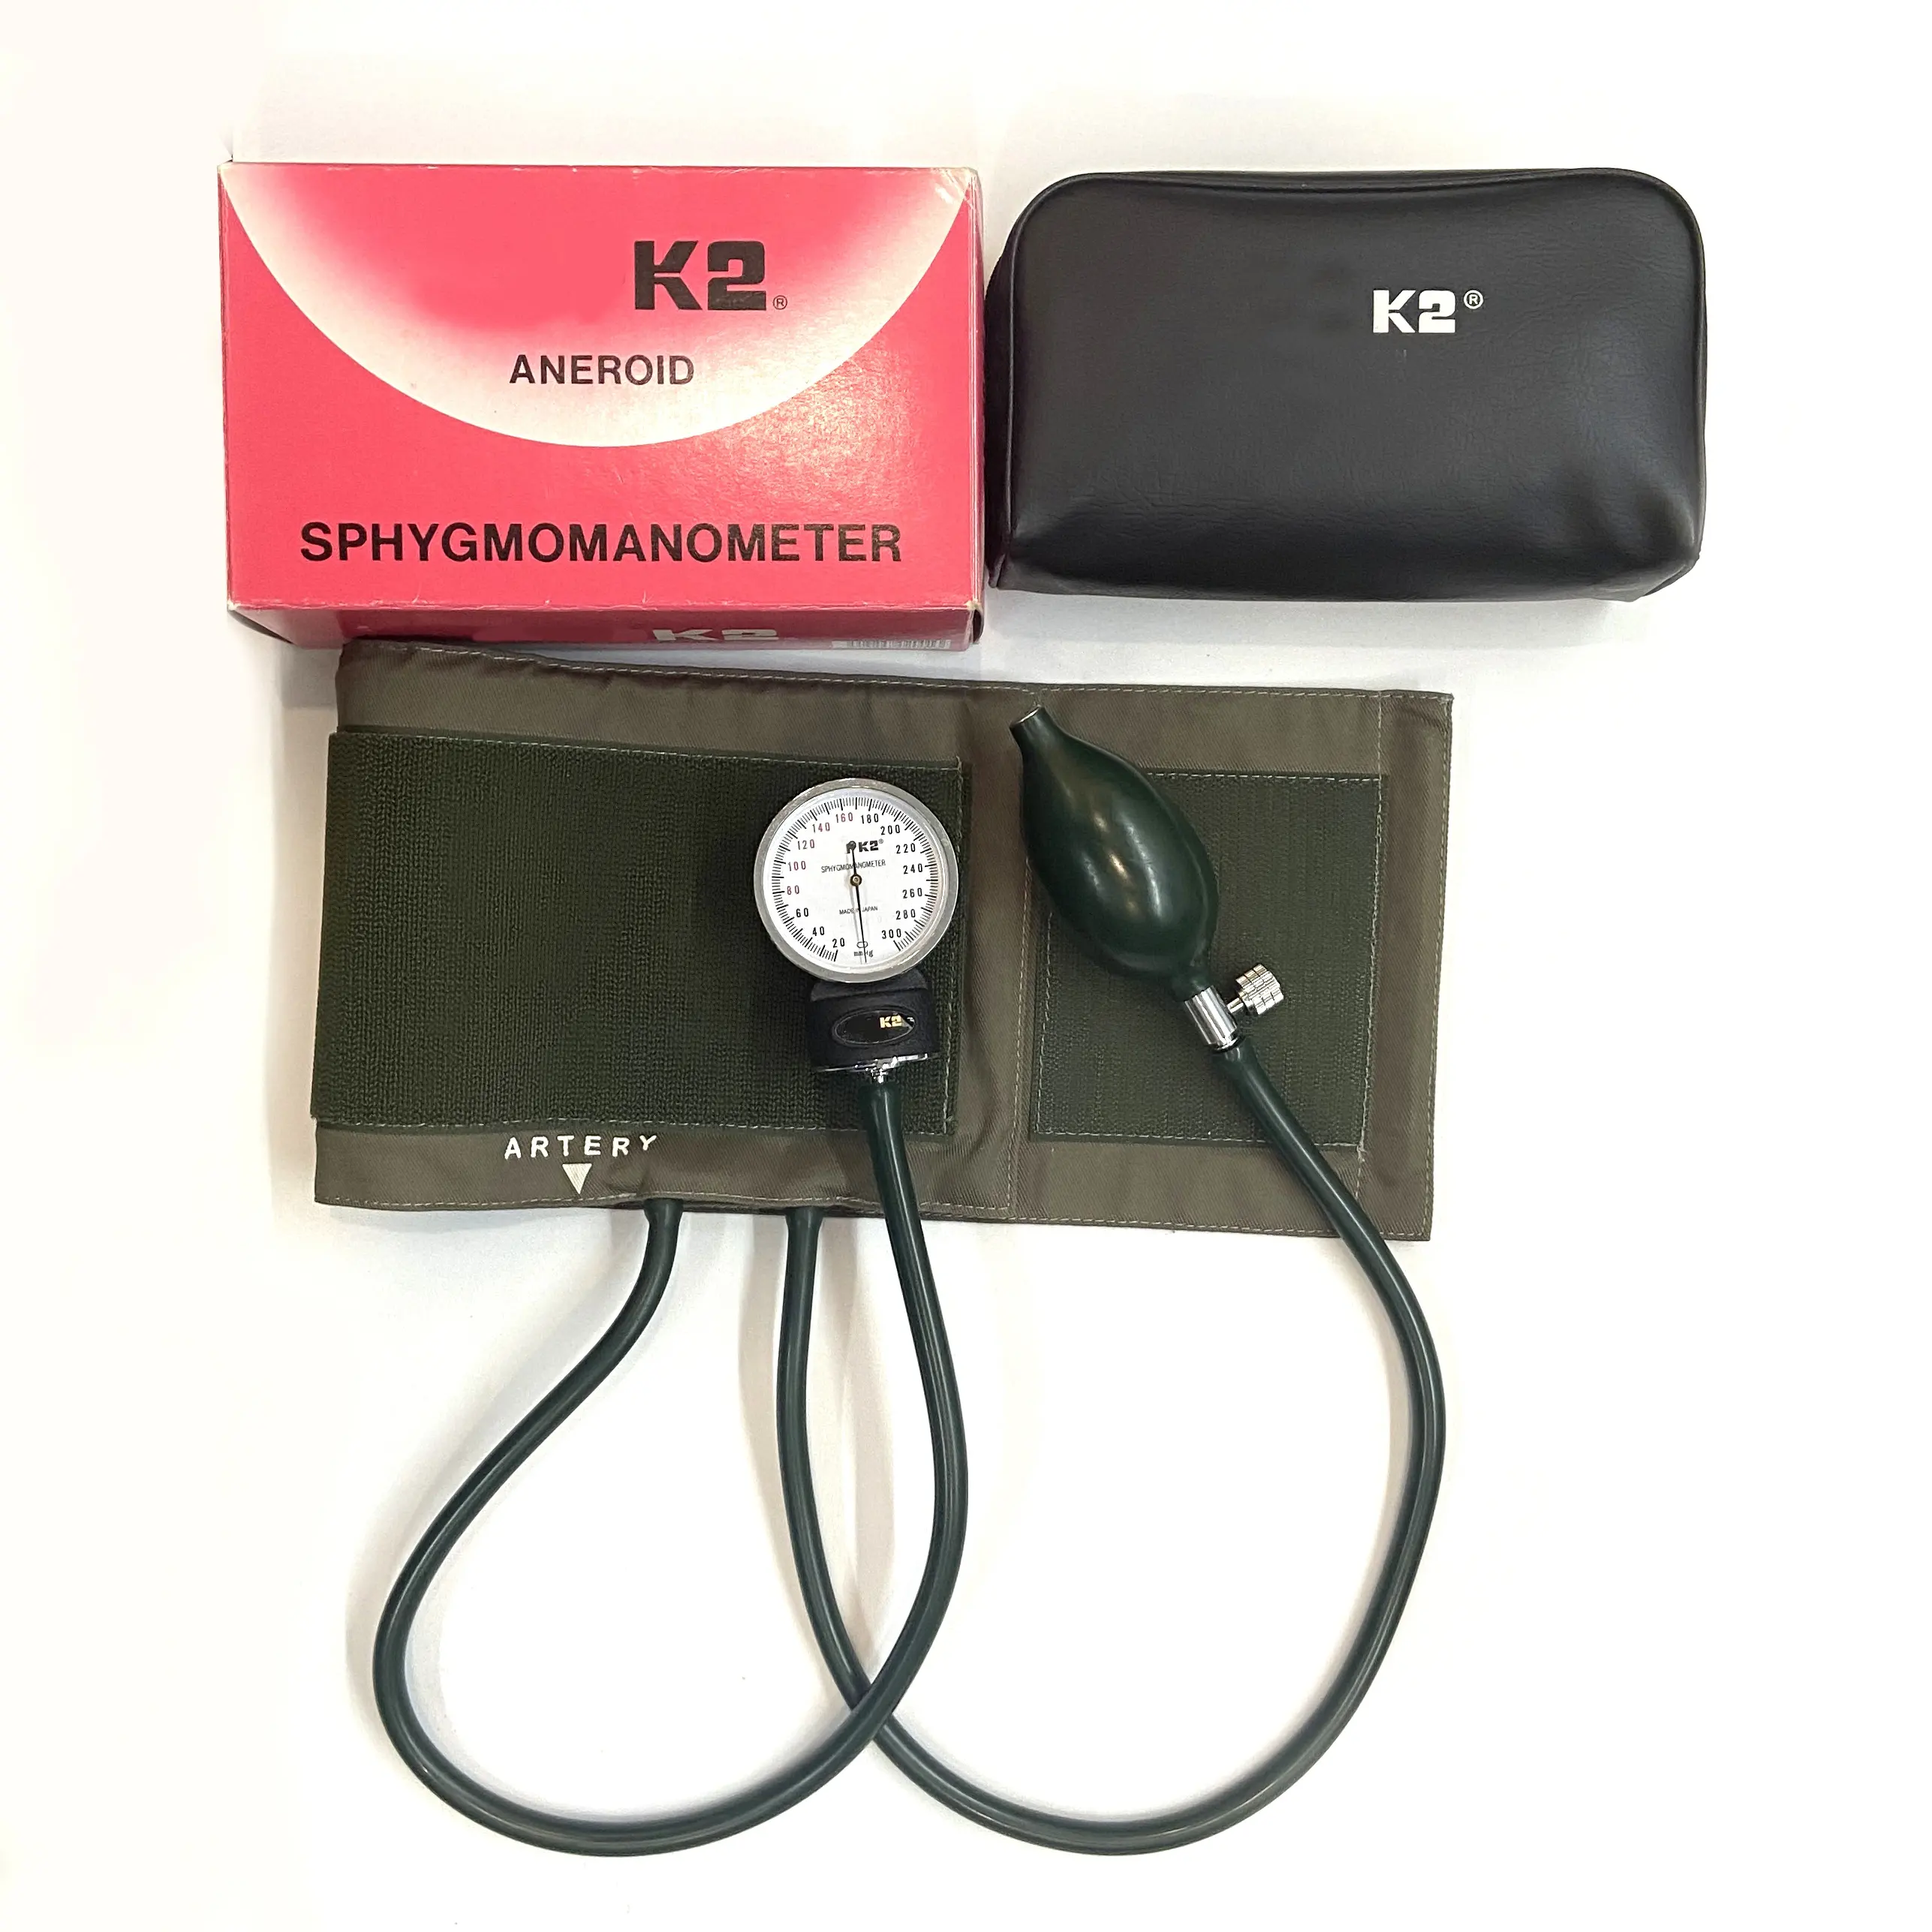 Werksverkauf ALPK zwei Stethoskop Blutdruck messgerät Japan K2 Aneroid Blutdruck messgerät Weiße Manschette Stethoskop ALPK